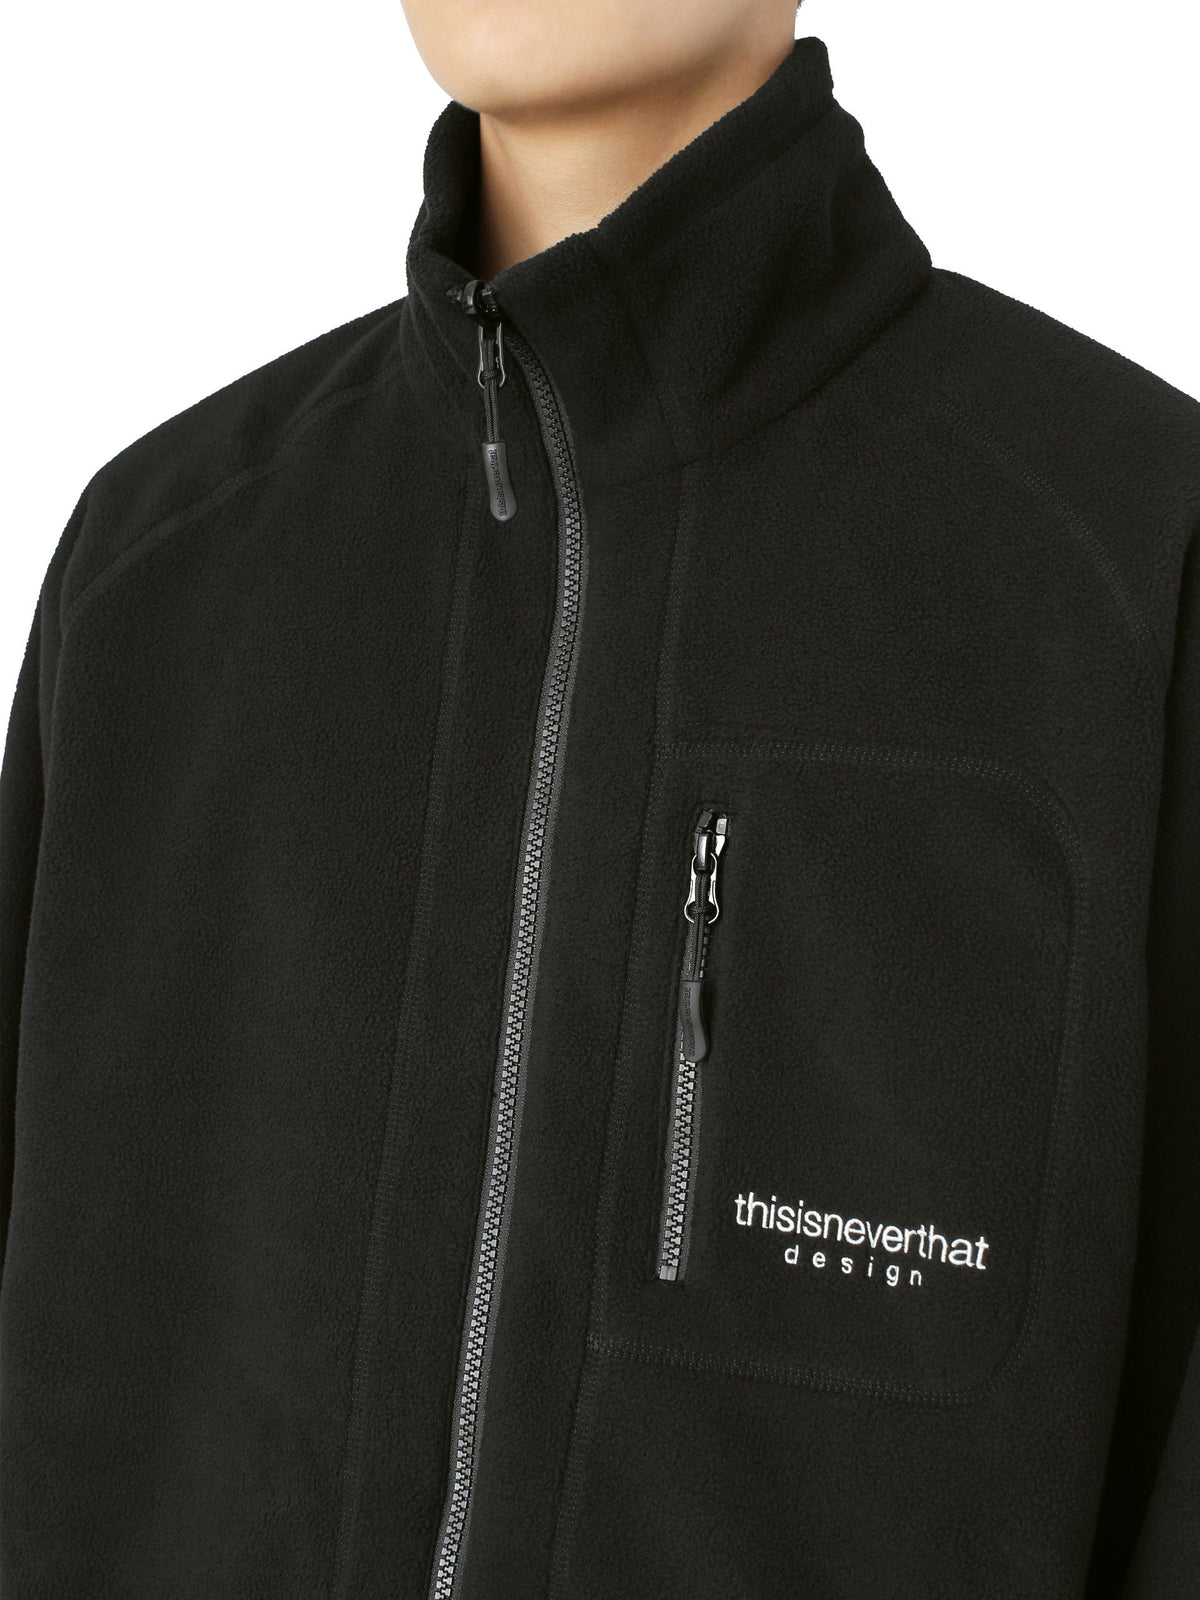 GORE-TEX® INFINIUM™ Fleece Jacket Jackets 